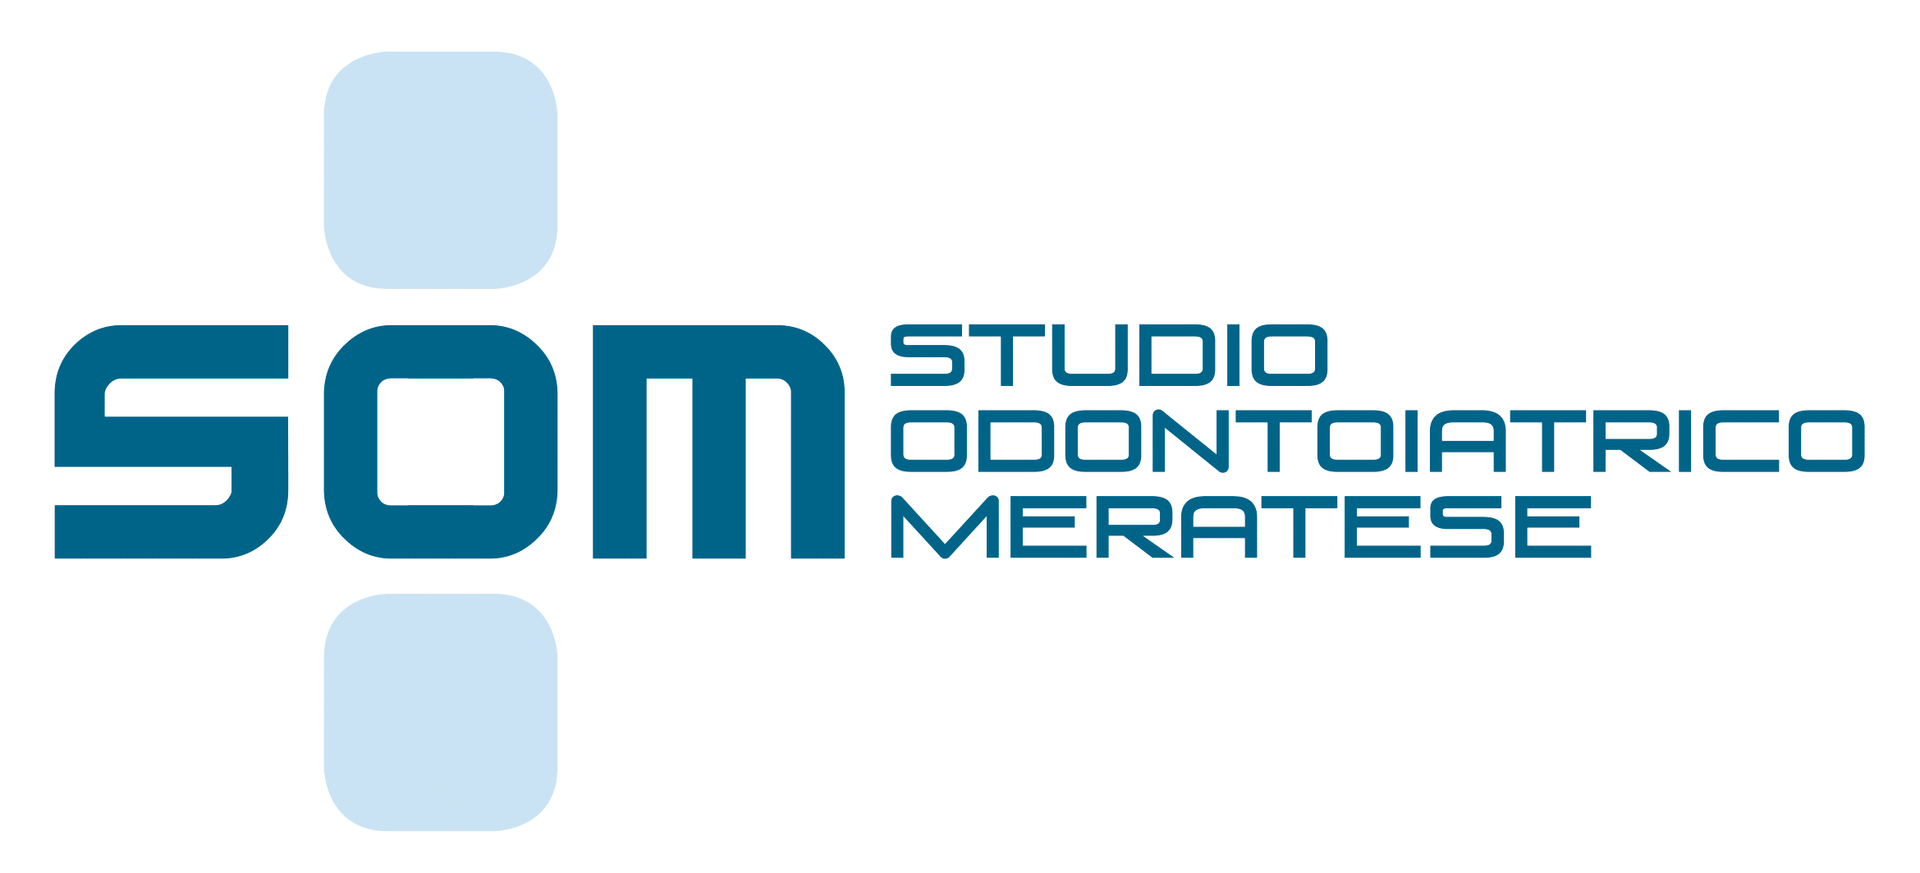 STUDIO ODONTOIATRICO MERATESE logo